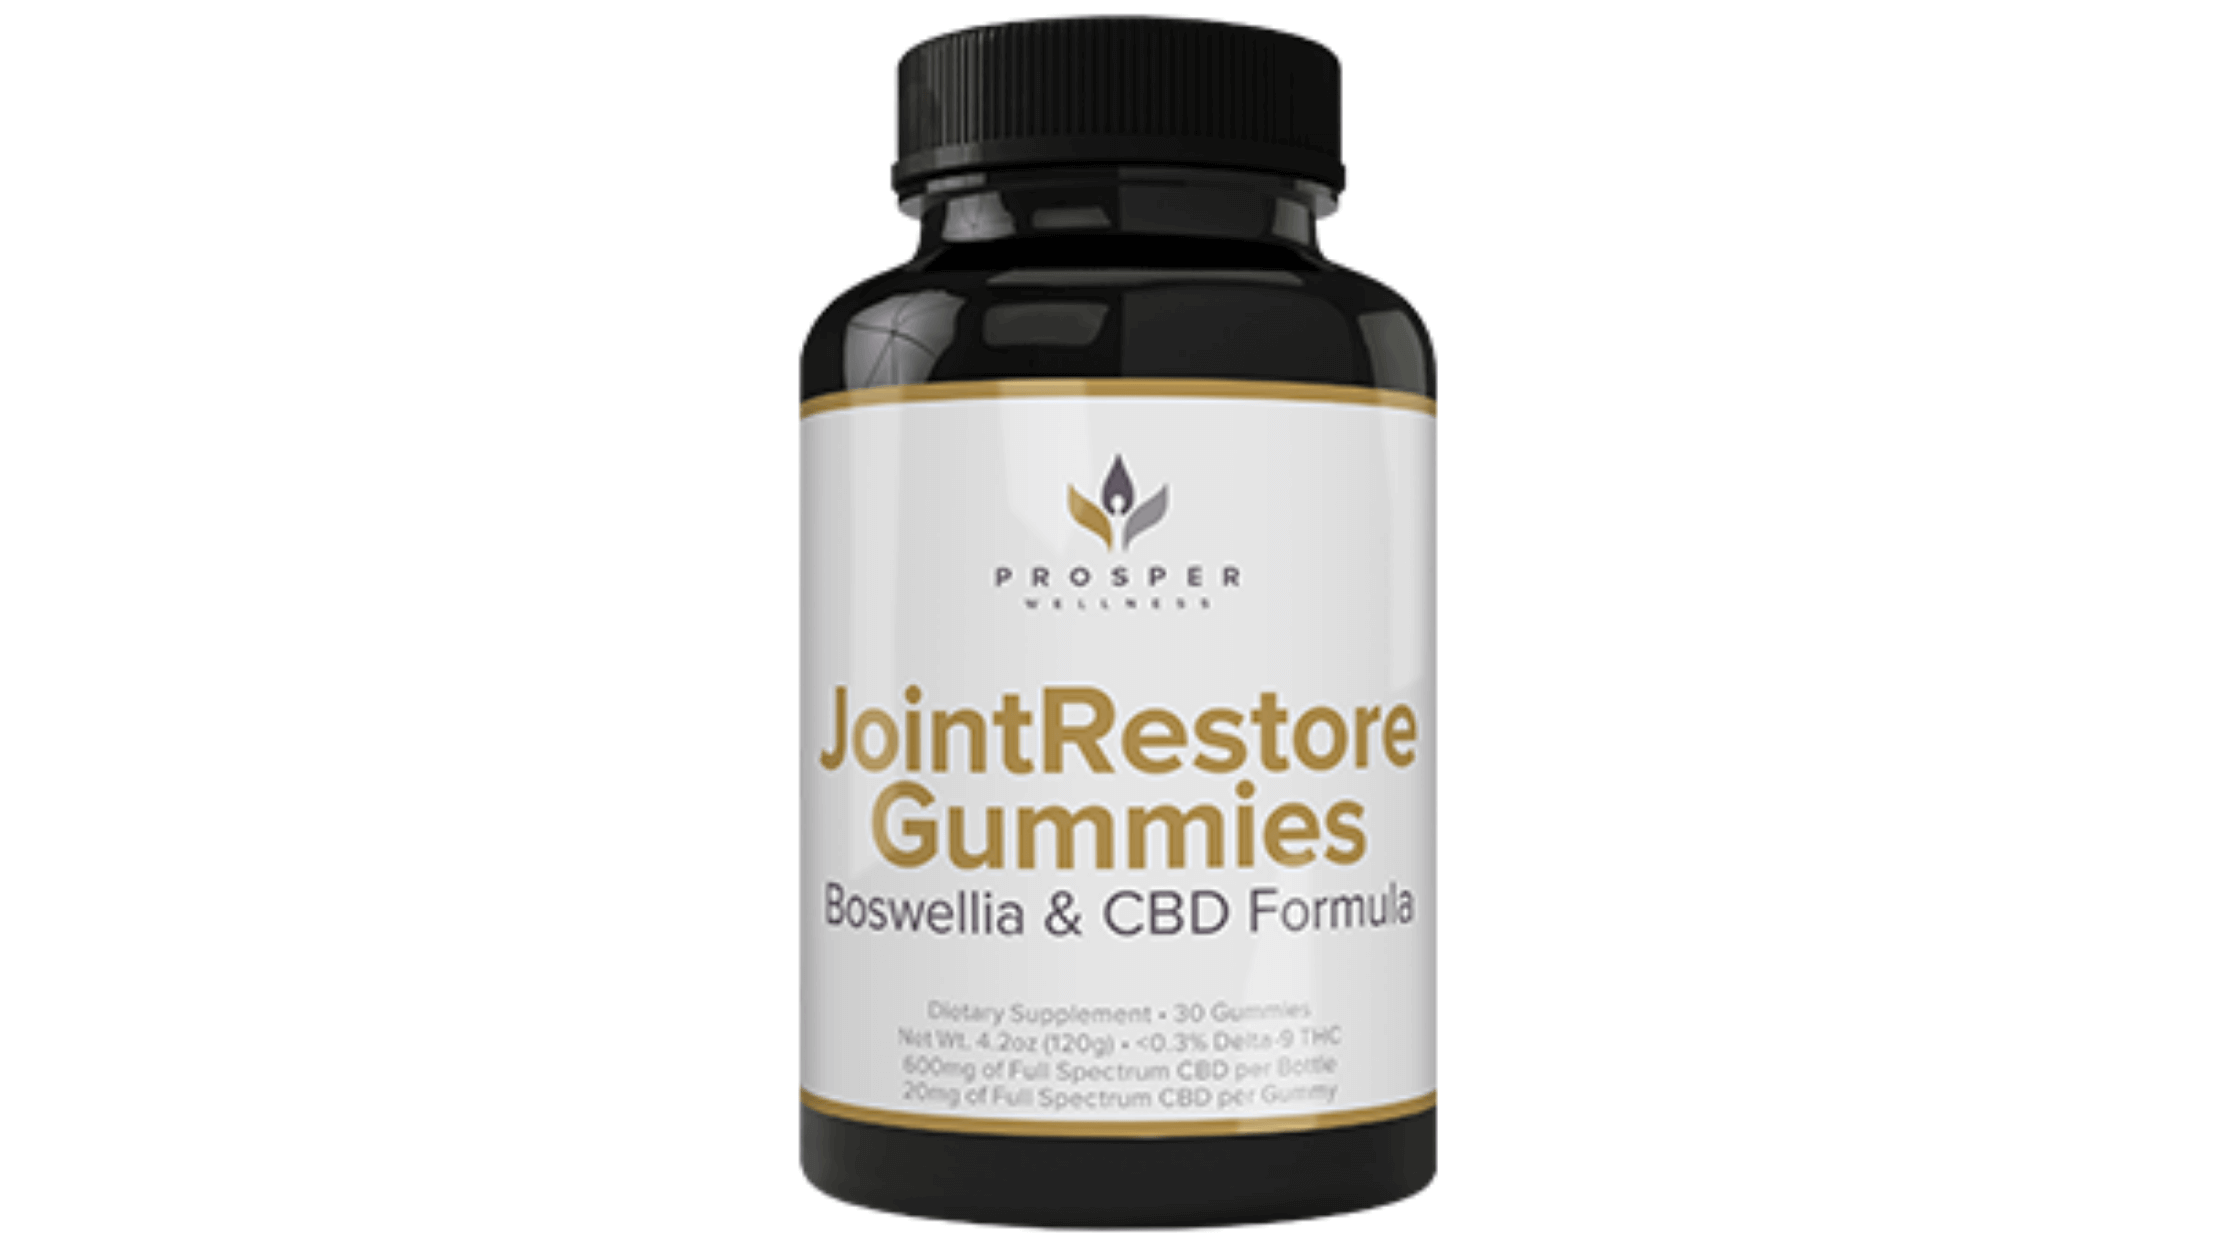 Prosper Wellness JointRestore Gummies Reviews